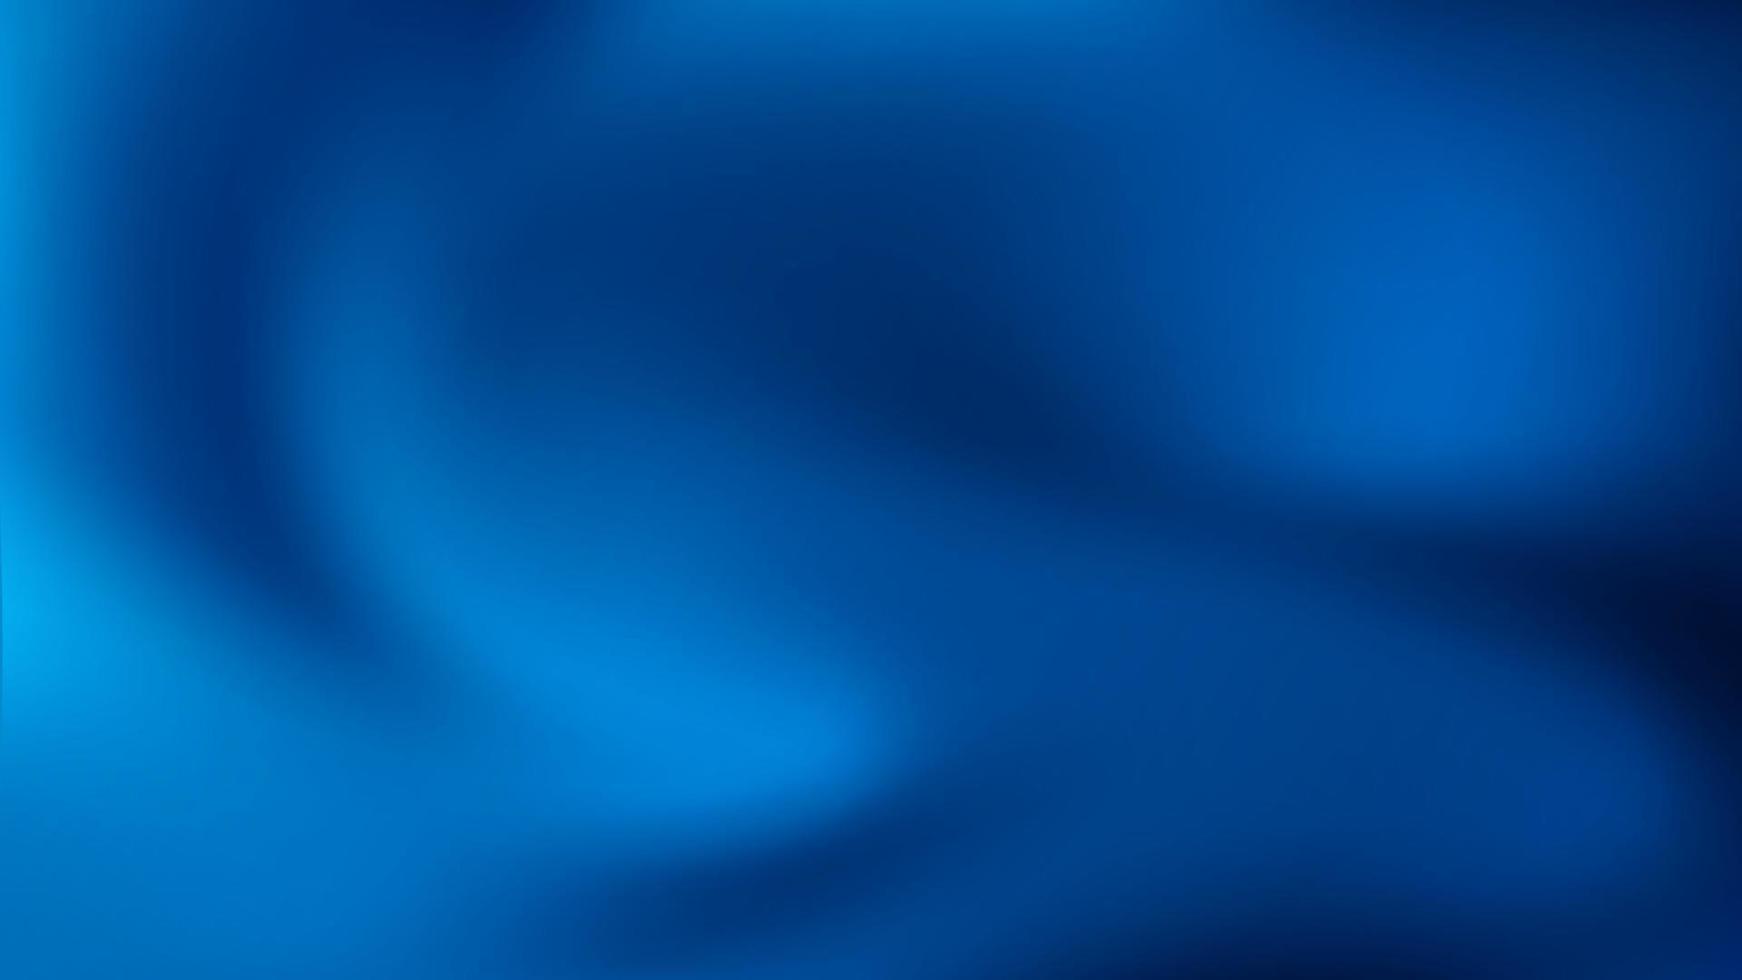 Blue Dark  Gradient Blur Abstract background. vector